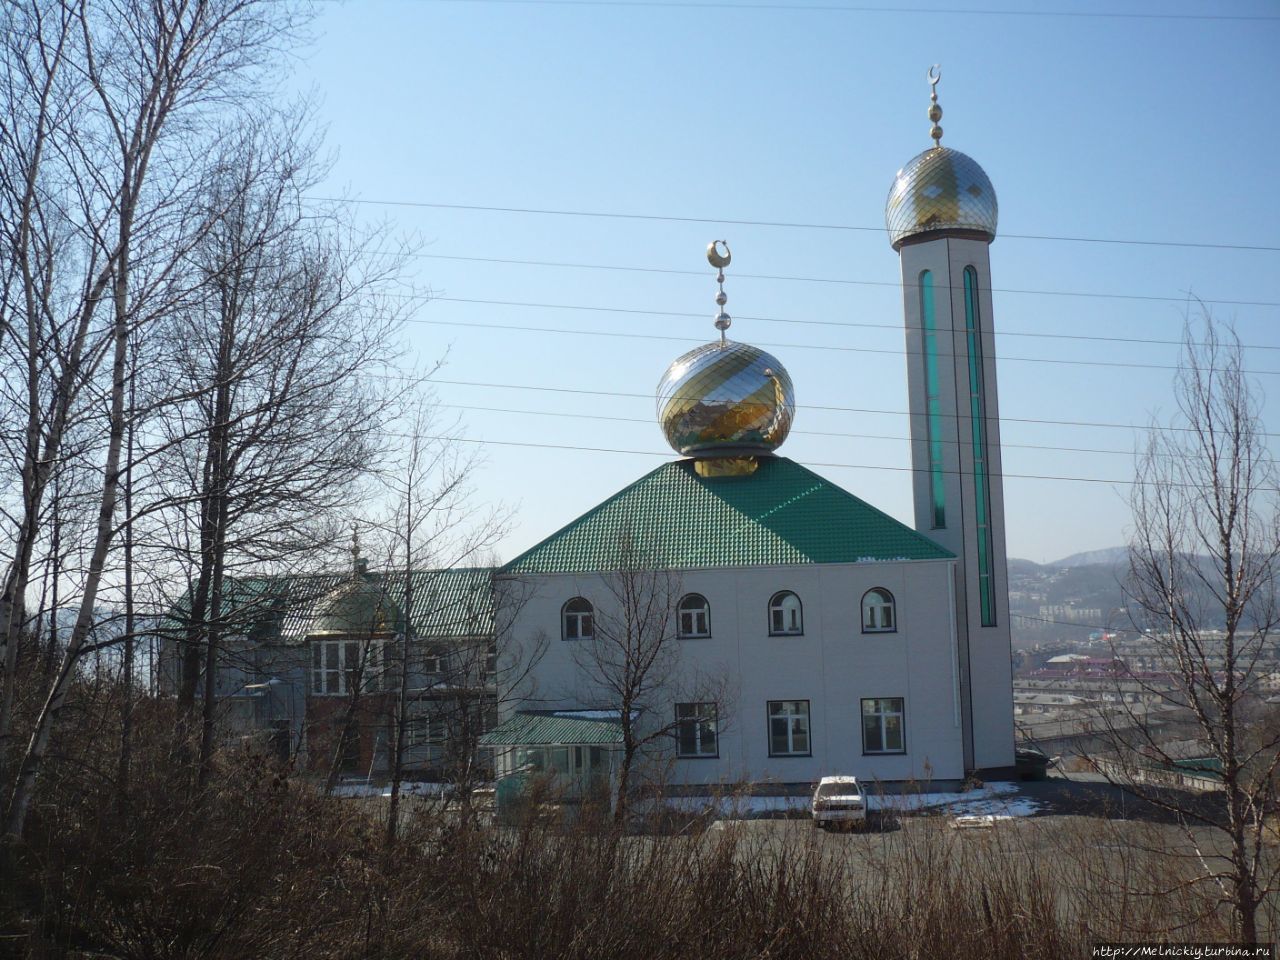 Находкинская мечеть Находка, Россия